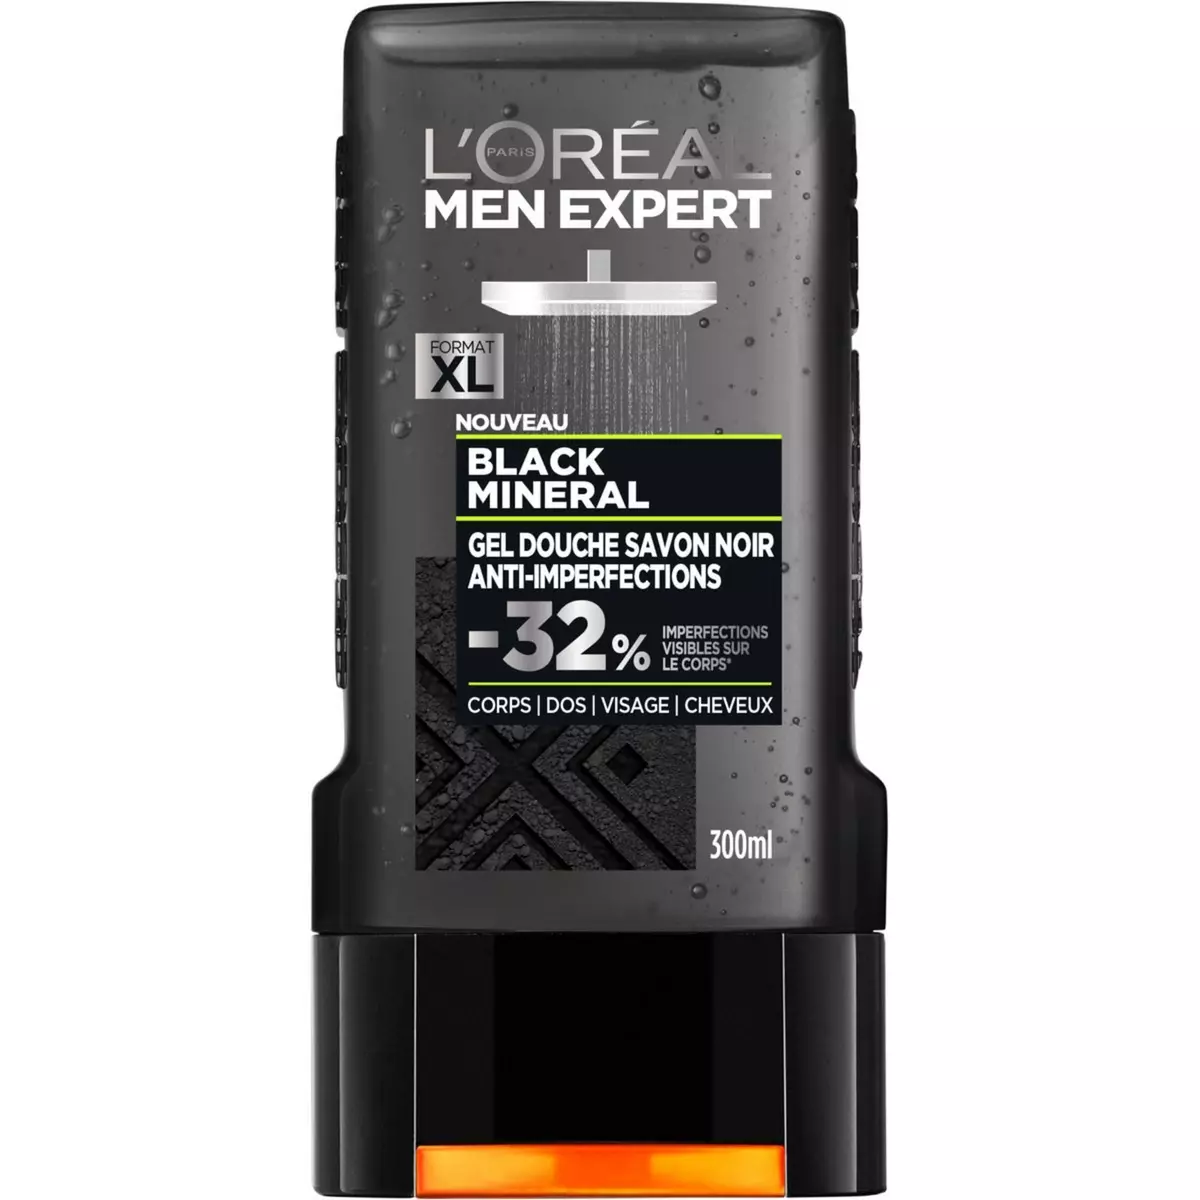 L'OREAL Men Expert Gel douche savon noir anti imperfections pour hommes corps visage et cheveux 300ml